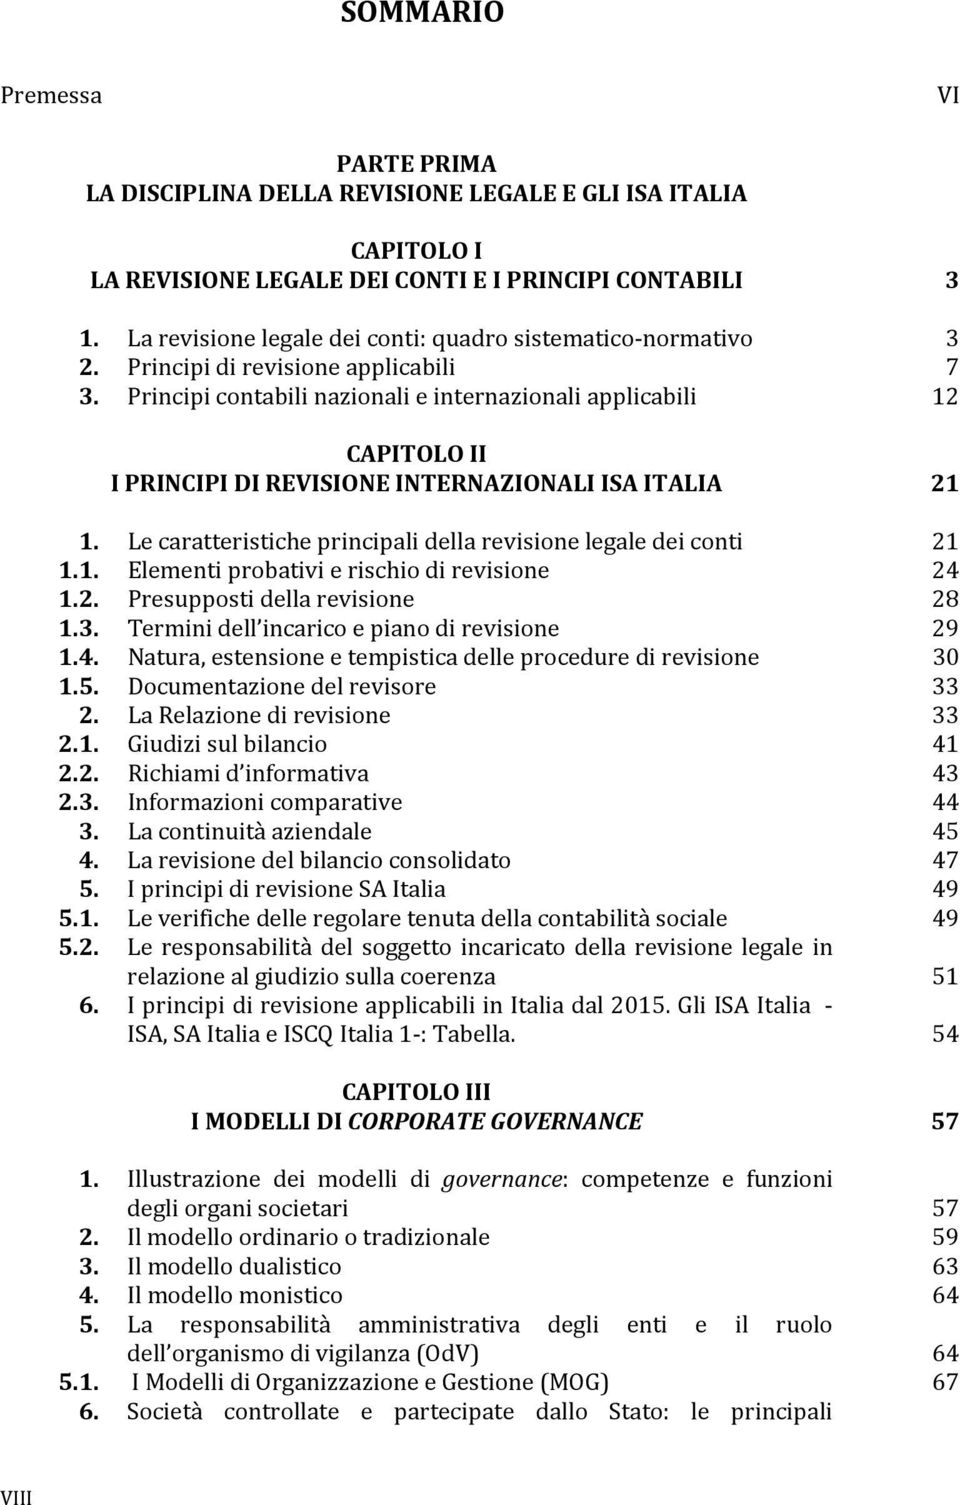 Principi contabili nazionali e internazionali applicabili 12 CAPITOLO II I PRINCIPI DI REVISIONE INTERNAZIONALI ISA ITALIA 21 1. Le caratteristiche principali della revisione legale dei conti 21 1.1. Elementi probativi e rischio di revisione 24 1.